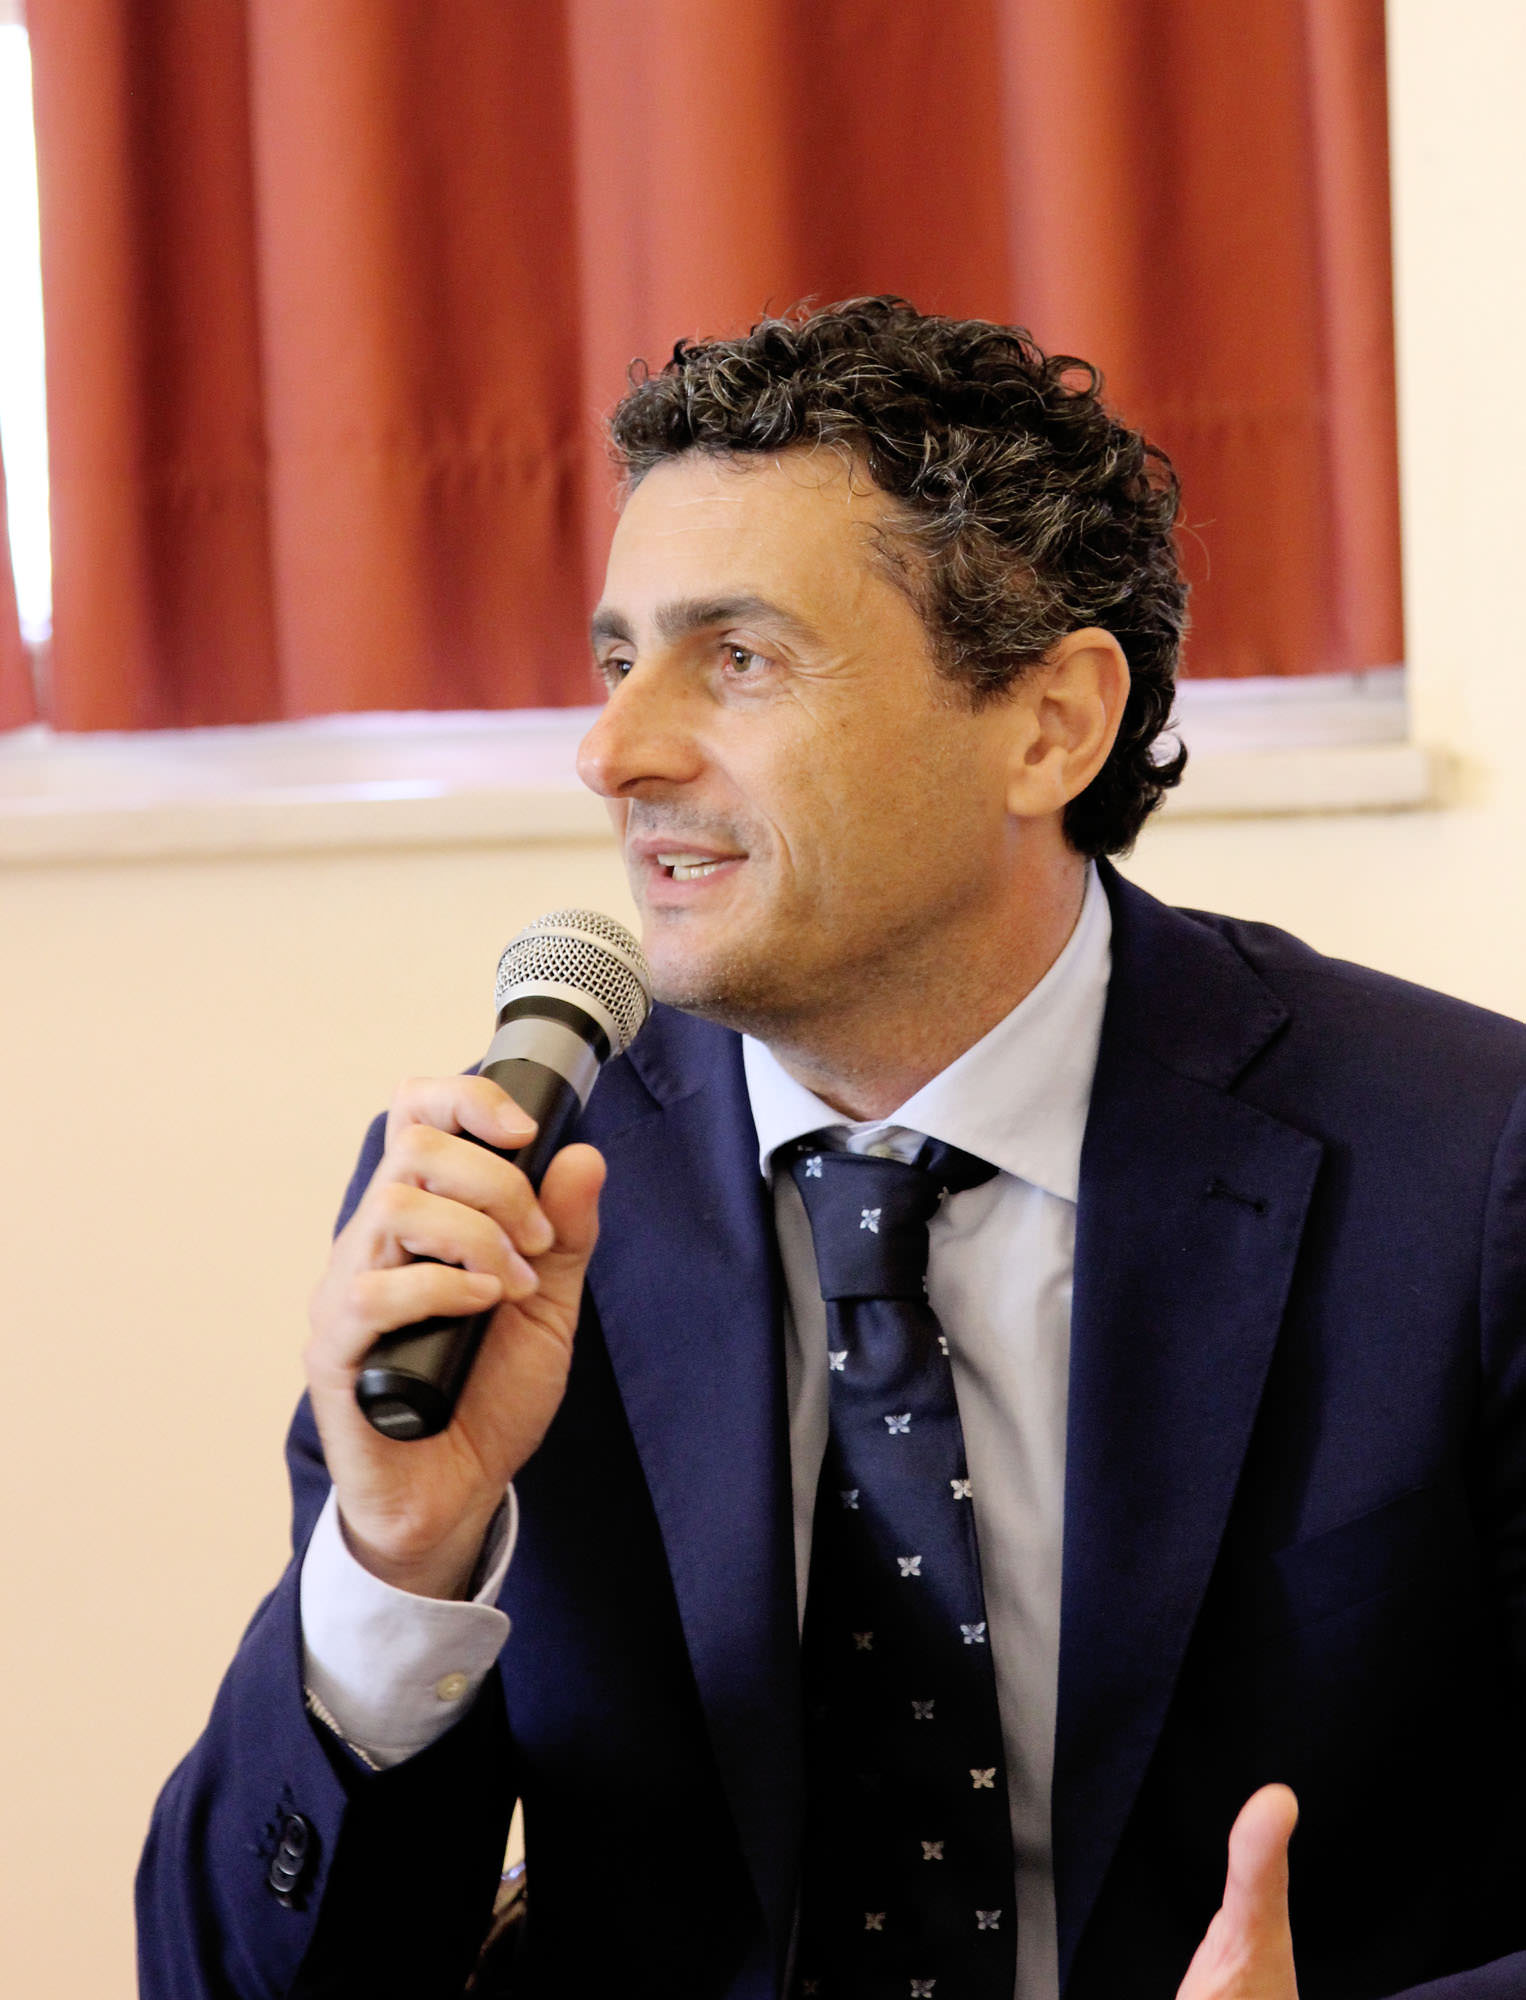 Bilancio consuntivo, Poletti (PD): “Ci siamo astenuti dal voto”